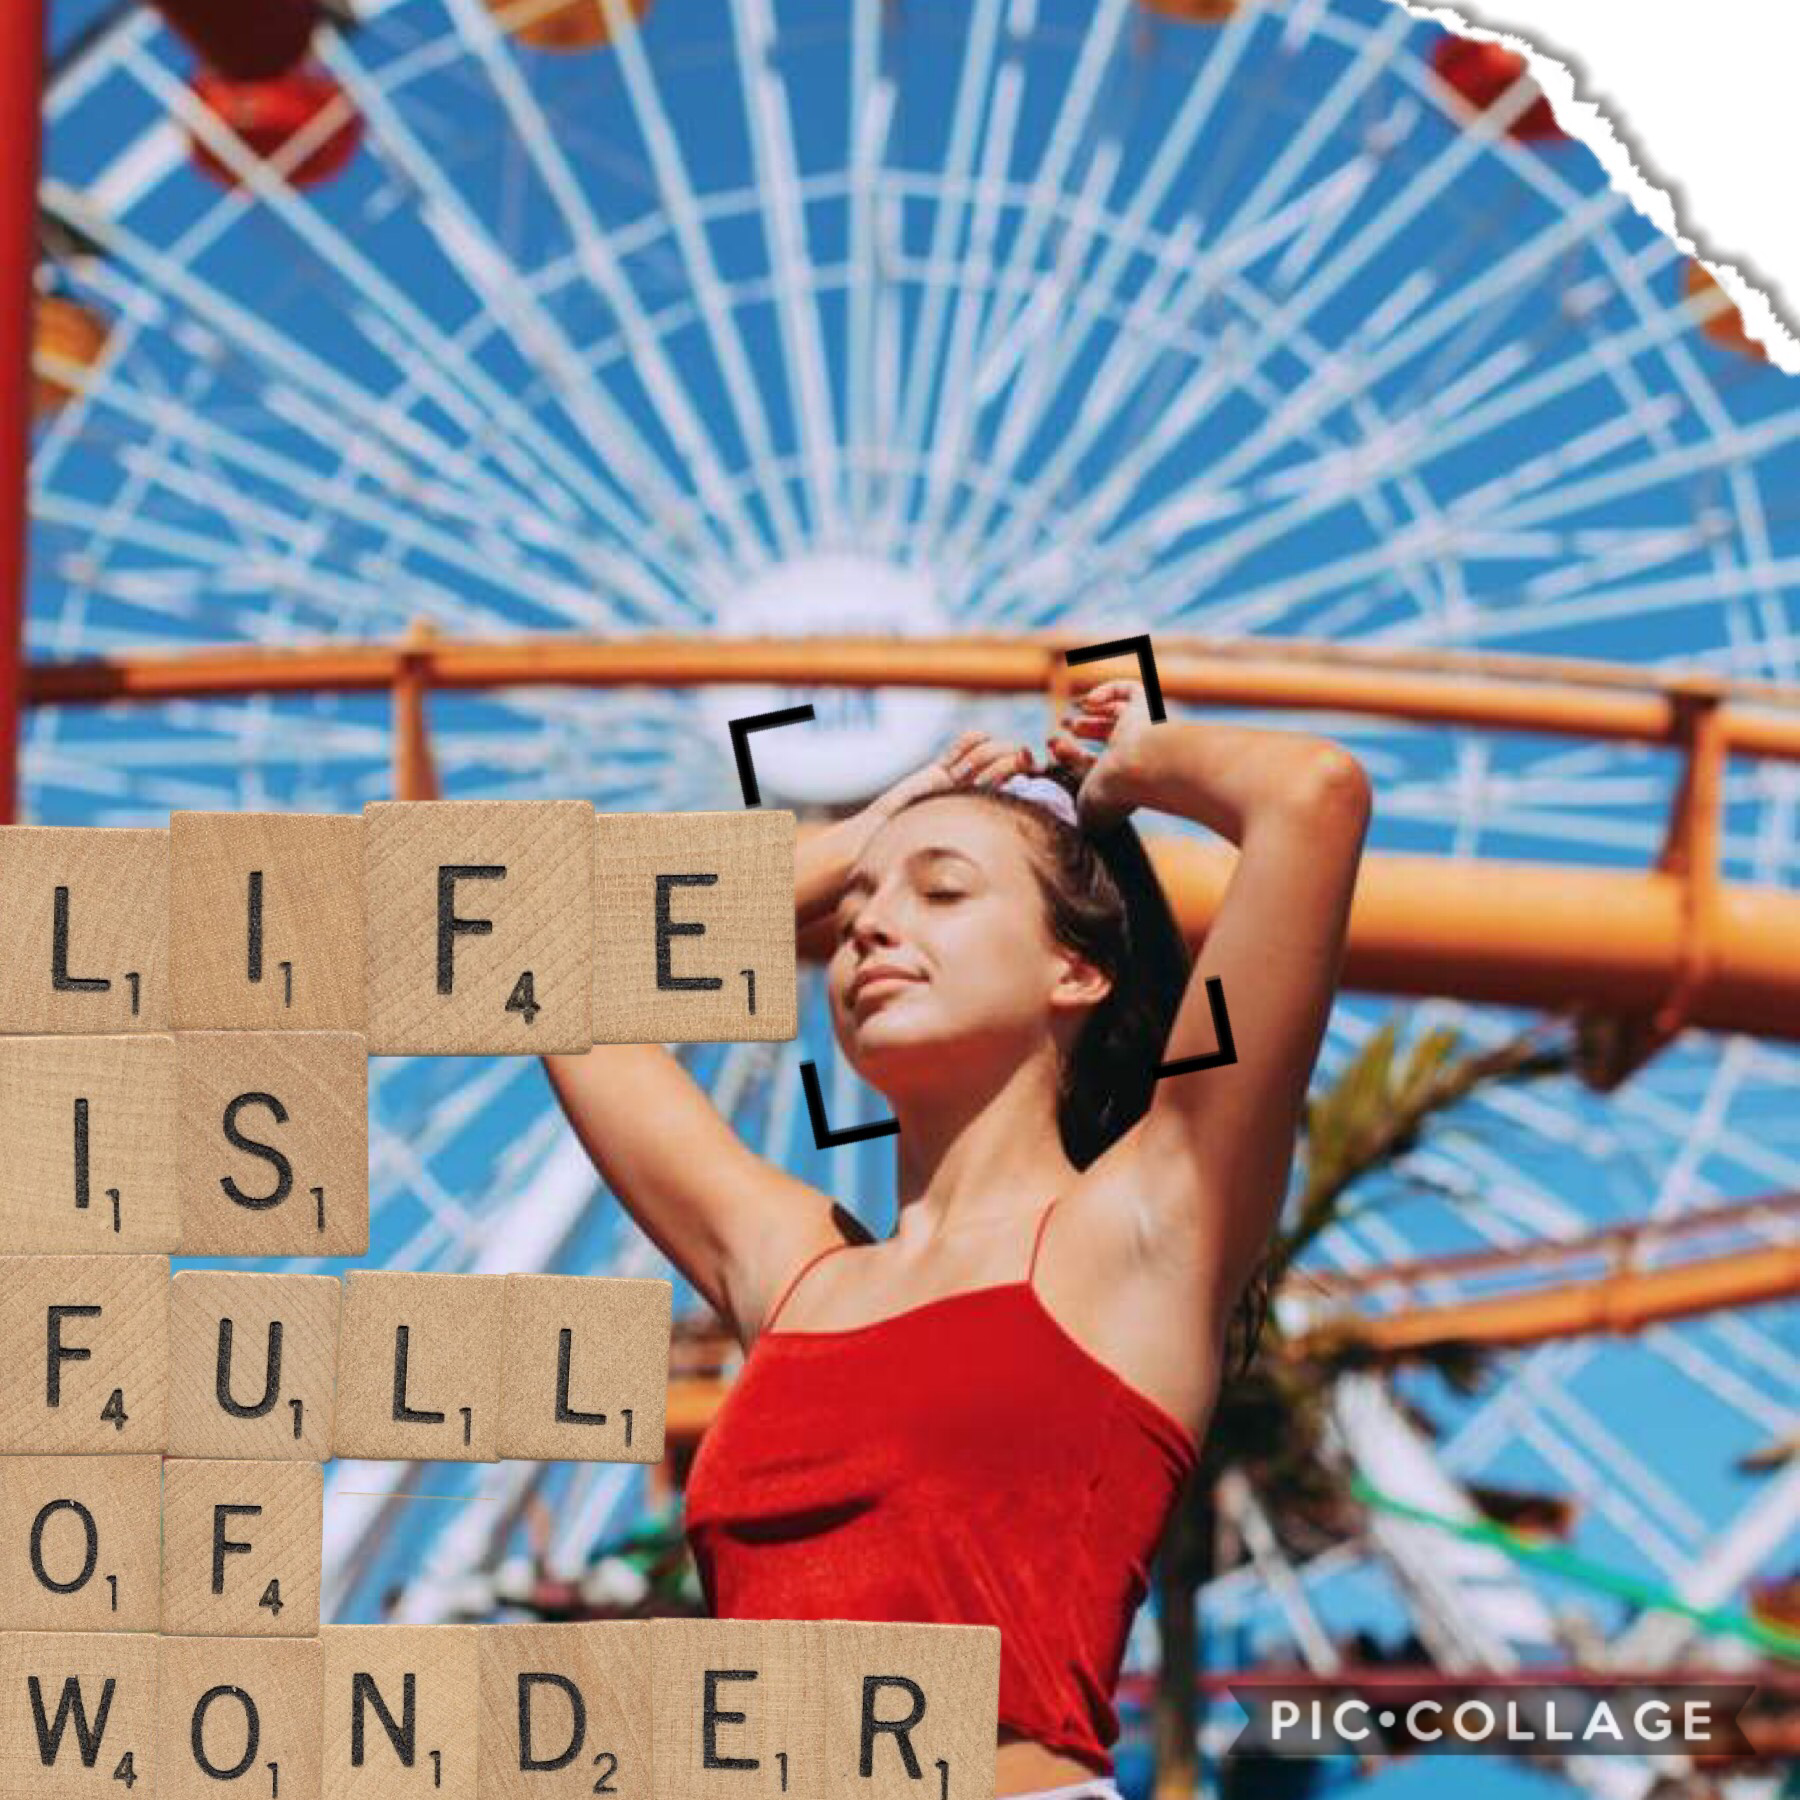 Life is full of wonder